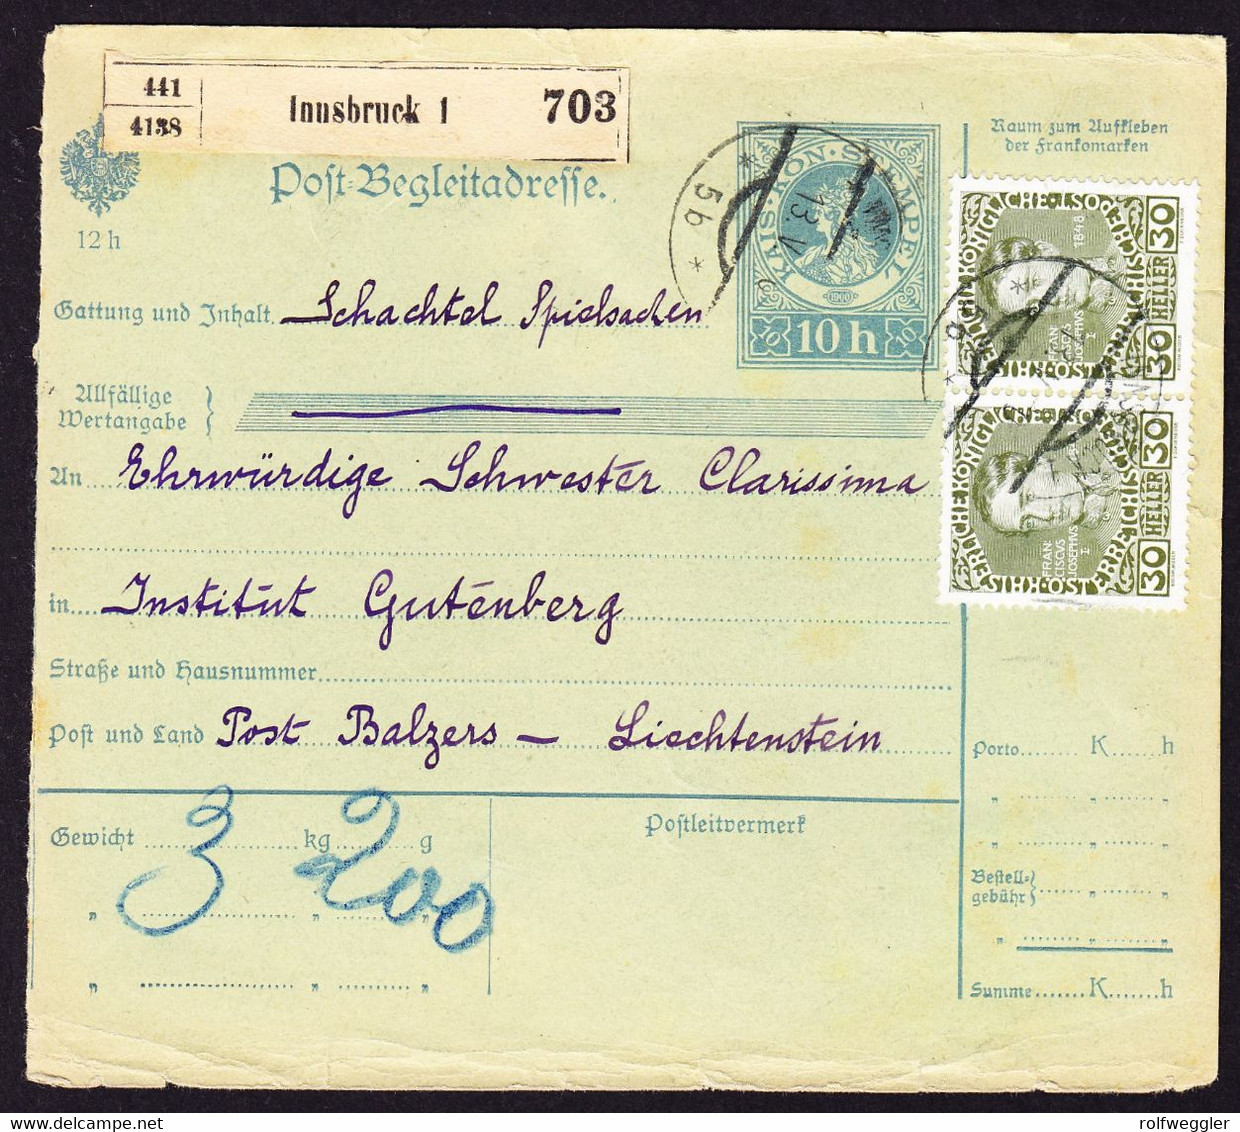 1910 Oesterreichische Begleitadresse Für Spielsachen Aus Innsbruck Nach Balzers. Ankunftsstempel Auf Portomarke 4 Heller - Taxe